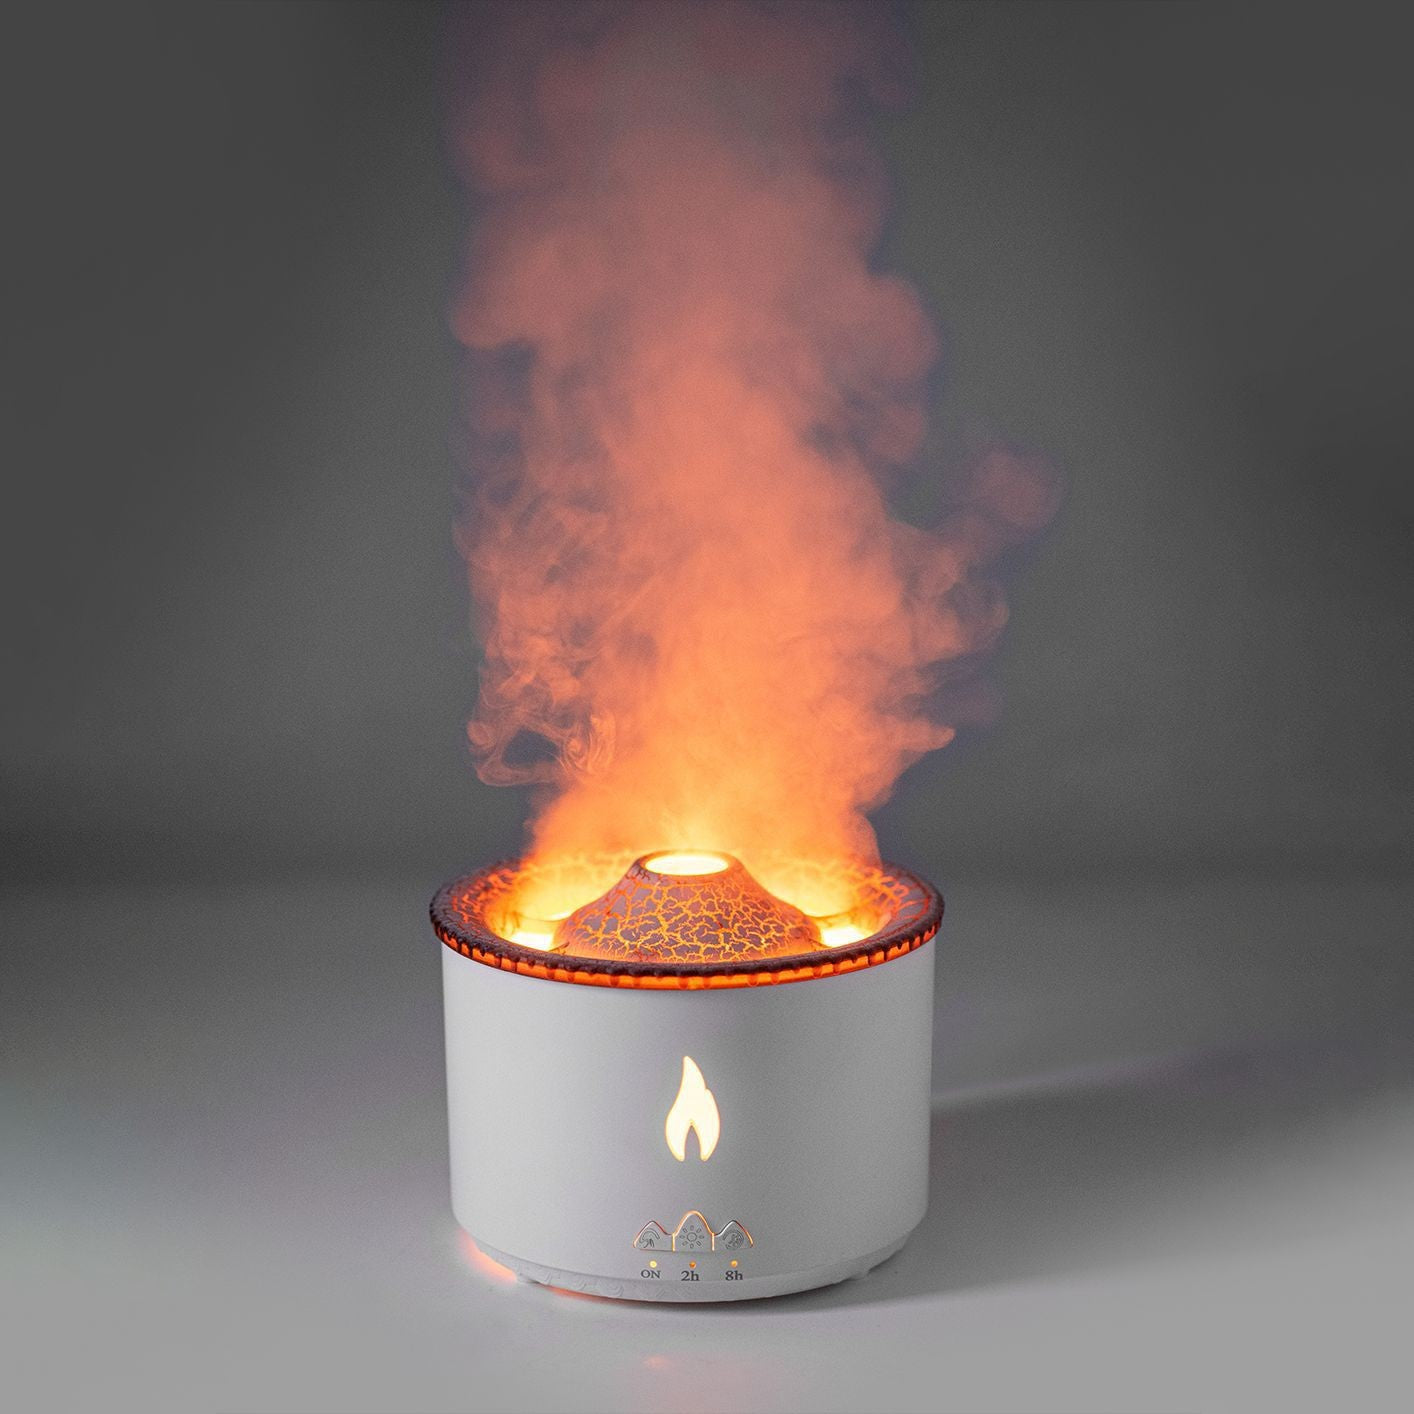 VolFog - Volcano Aroma Humidifier